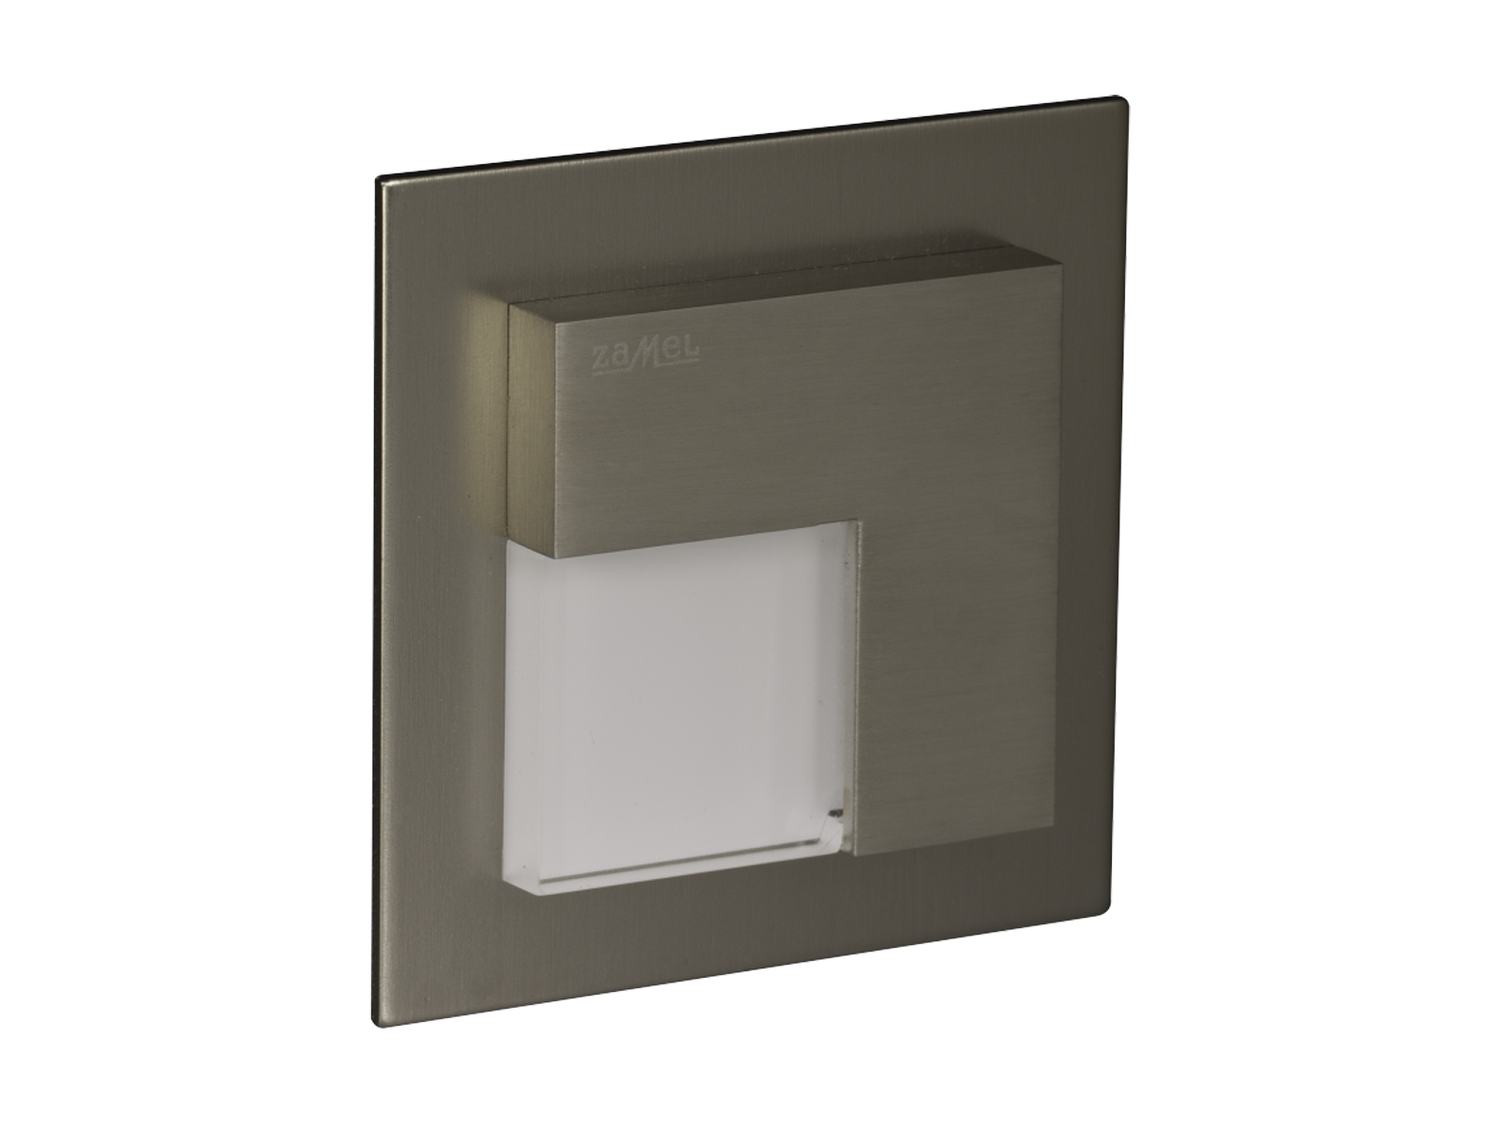 Svítidlo LED do KU krabice pod omítku LEDIX TIMO 14V DC, kartáčovaná ocel, teplá bílá, IP44